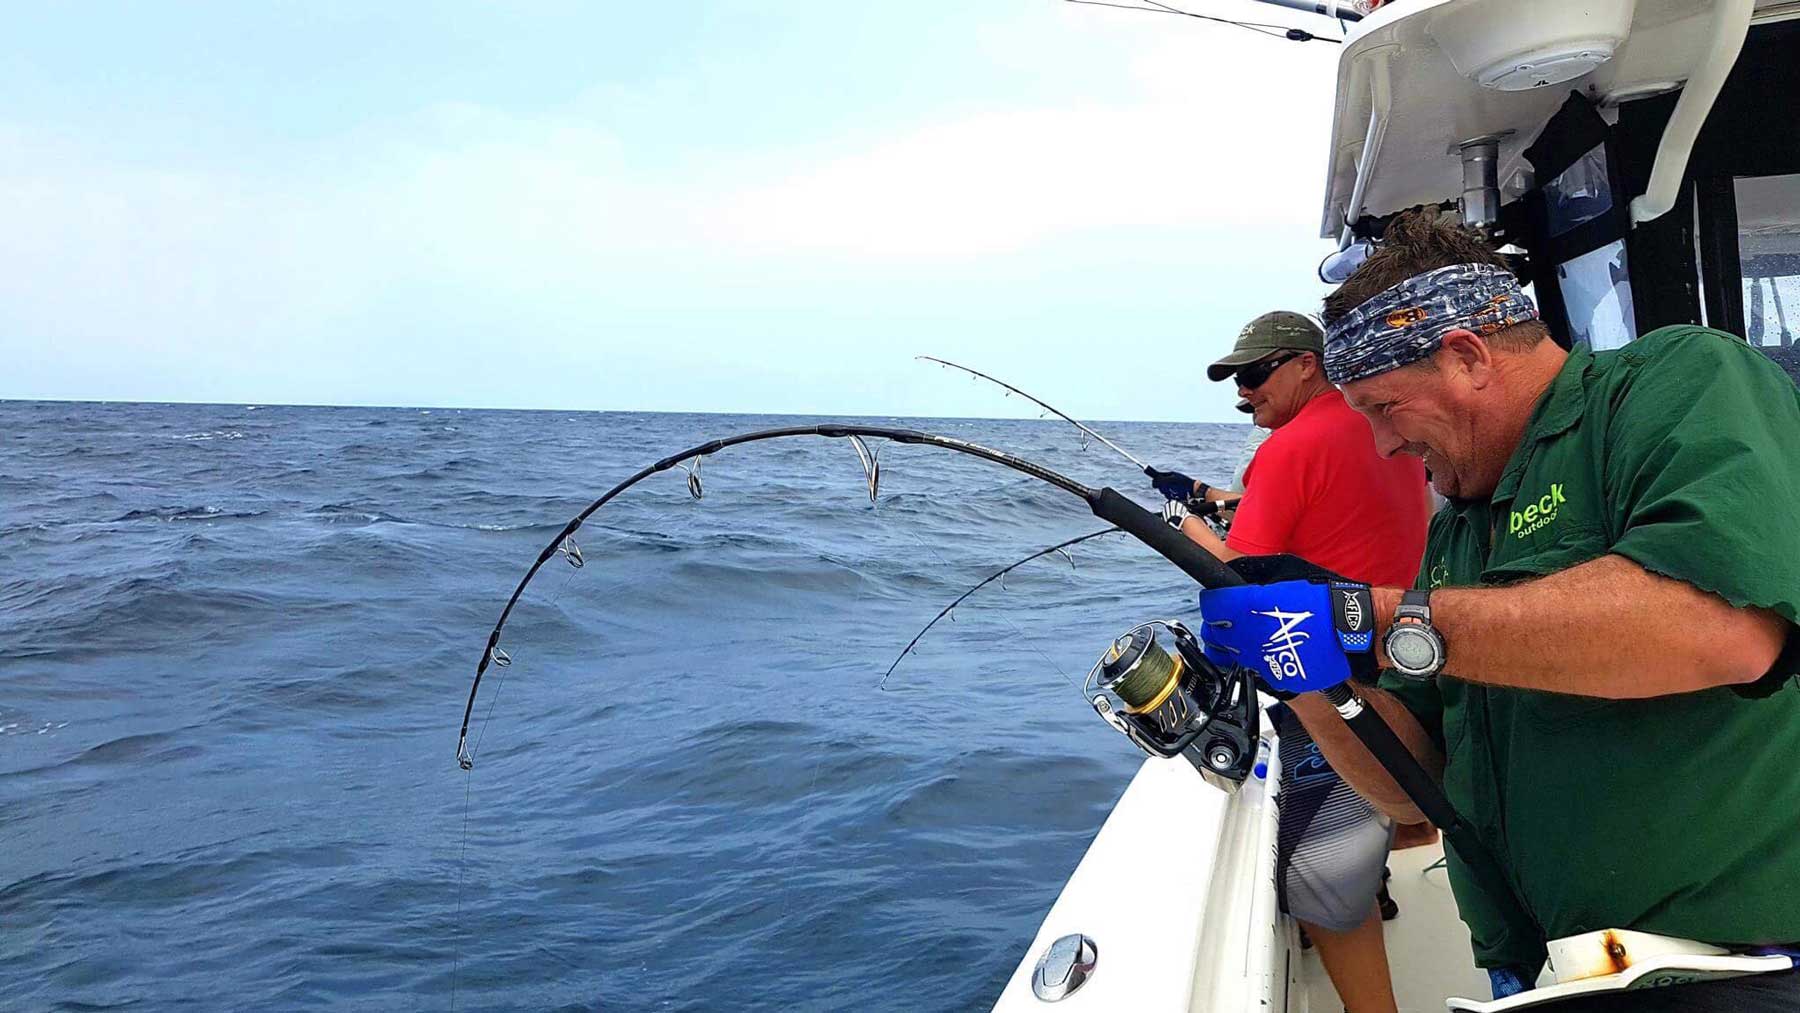 https://www.oceanbluefishing.com/magazine/wp-content/uploads/2018/04/ocean_blue_fishing_tips_choosing_fishing_rods_hero.jpg